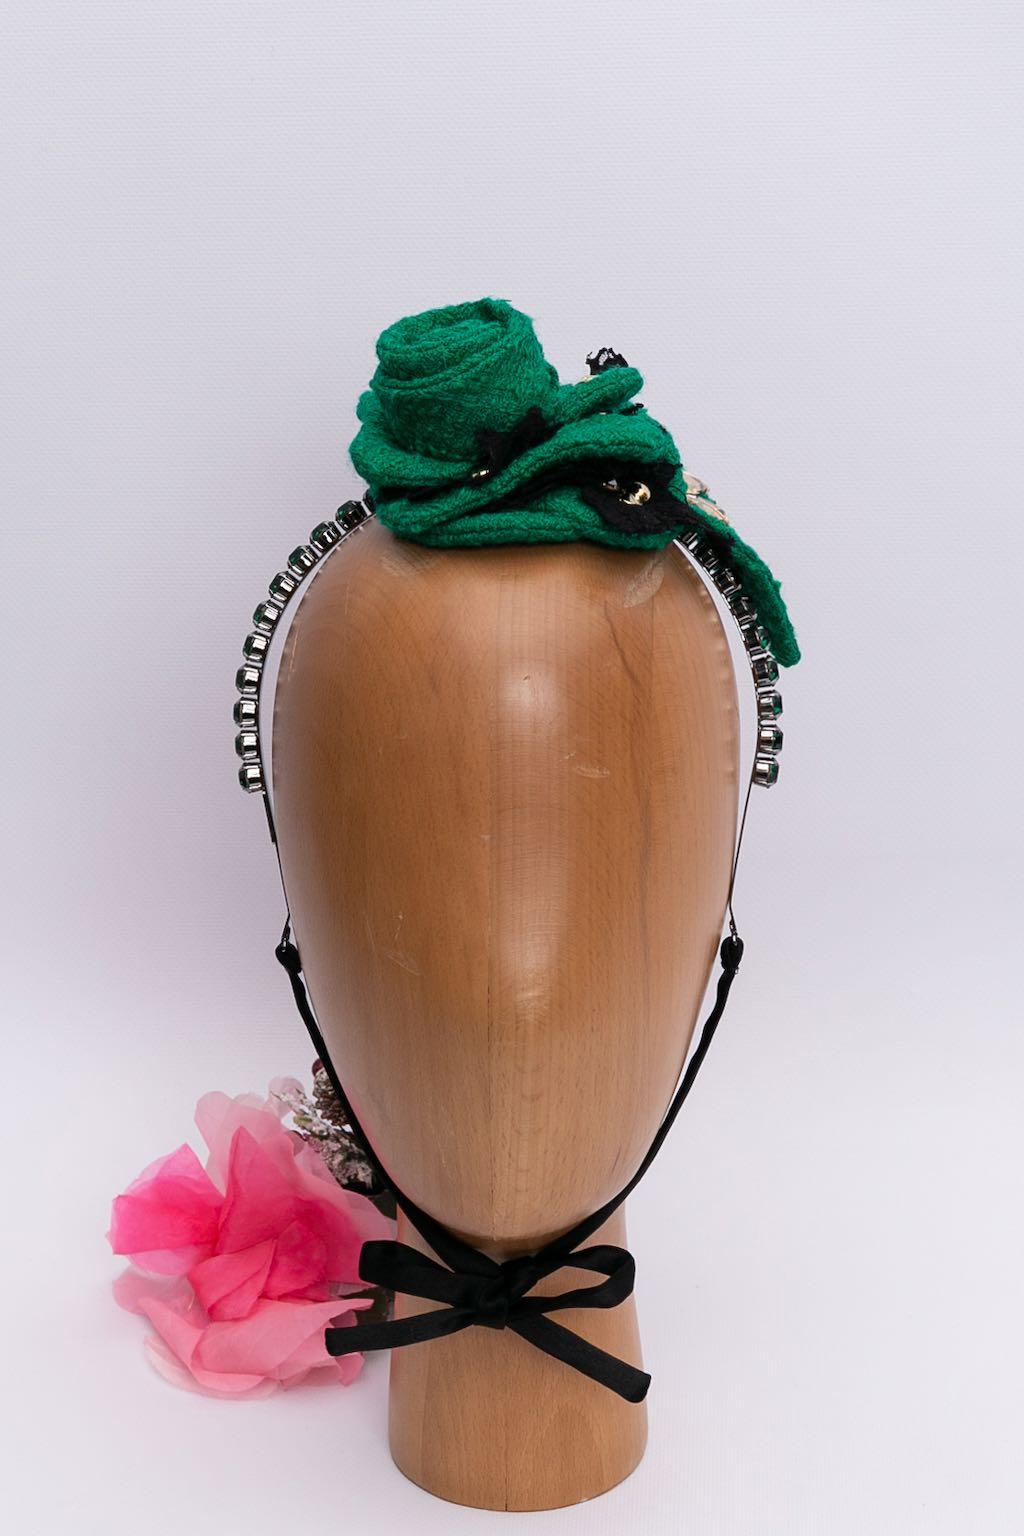 Dolce & Gabbana (Made in Italy) Bandeau en laiton pavé de strass et orné d'une fleur en laine

Informations complémentaires : 
Dimensions : Tour de tête : 39 cm (15,35 in) - Ouverture : 6 cm (2,36 in), Largeur : 1 cm (0,39 in)
Condit : Très bon